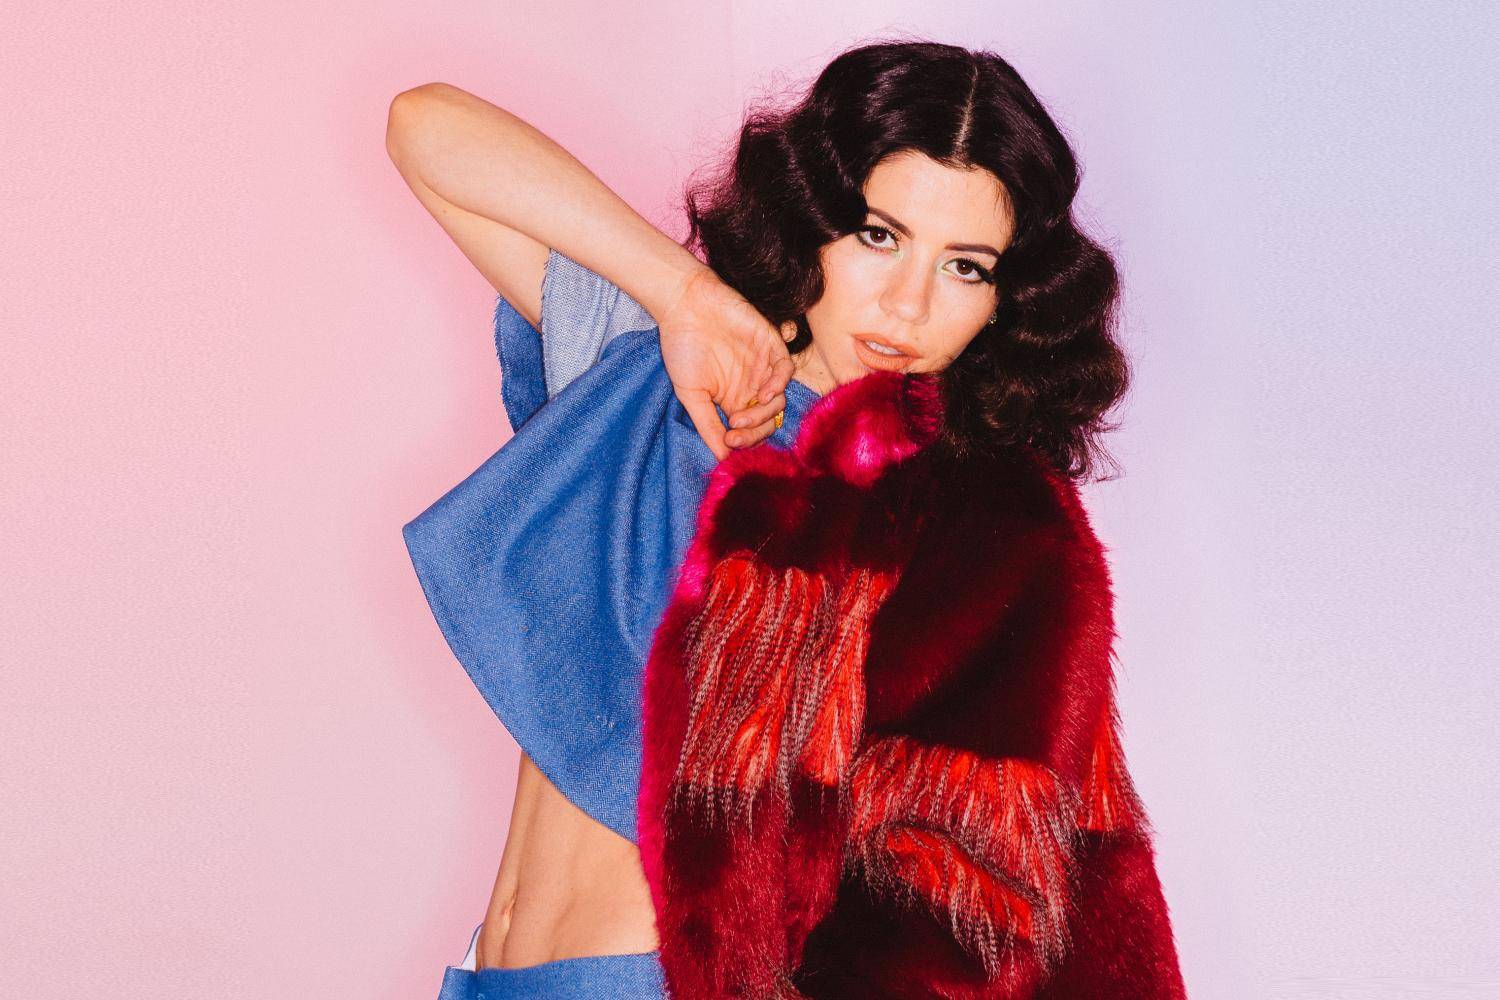 Marina And The Diamonds interview: Nechtěla jsem to co nahrávací společnost a nějak mi to prošlo